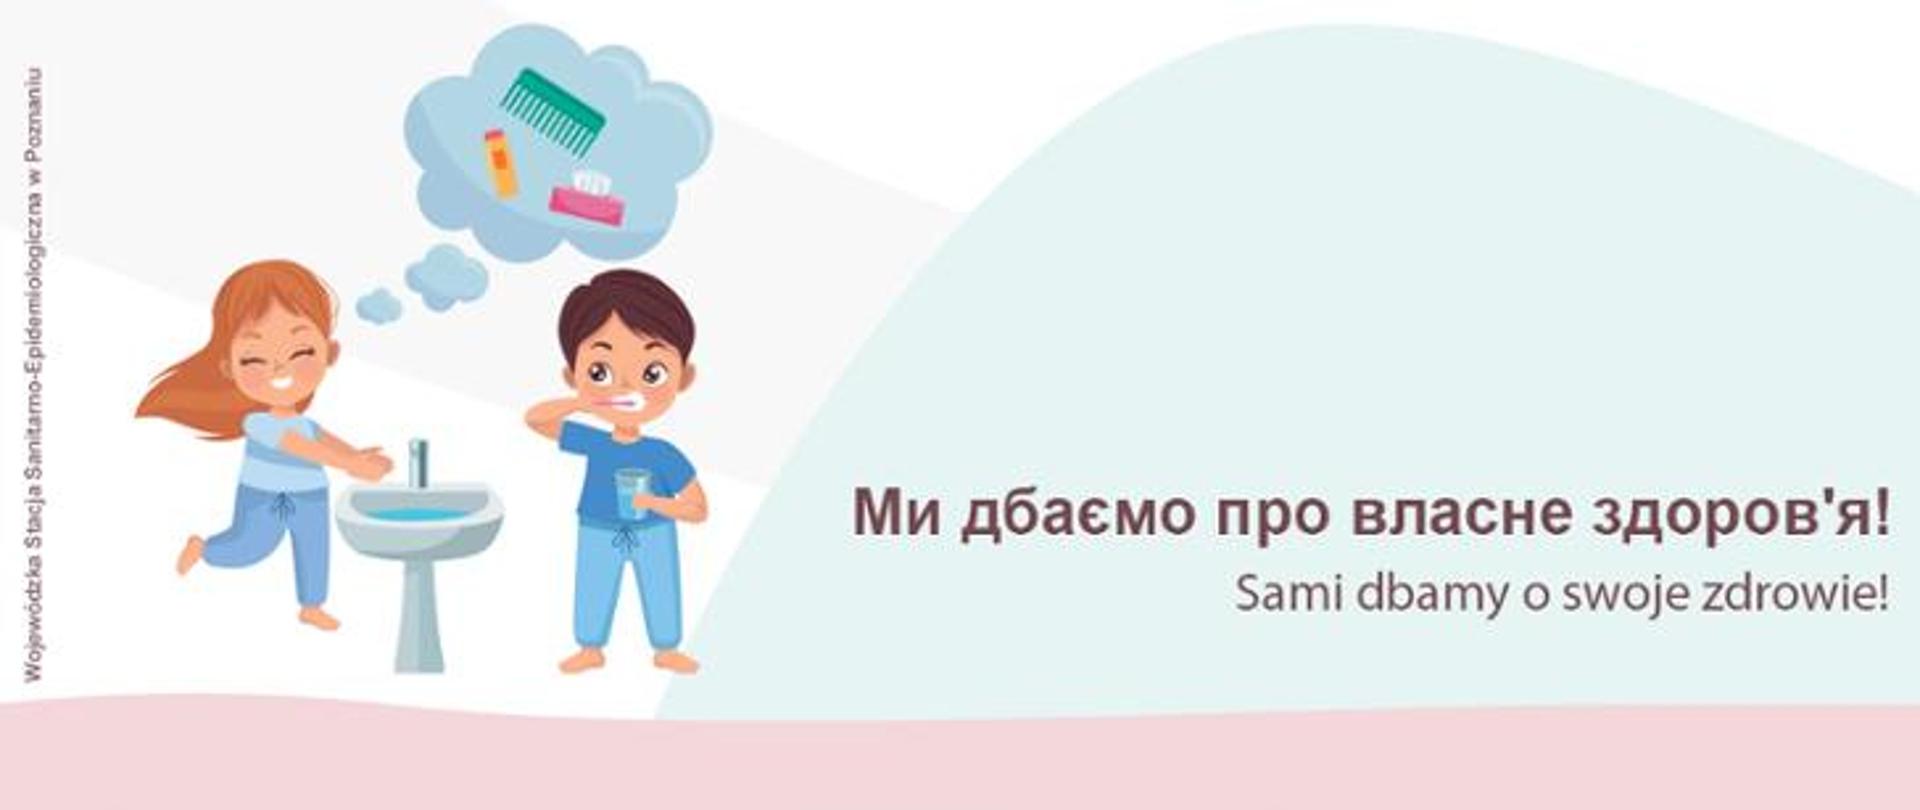 infografika kolorowa dziewczynka myje ręce nad umywalką w chmurce grzebień szczoteczka mydło, chłopiec myje zęby napis w j. ukraińskim i polskim Sami dbamy o swoje zdrowie